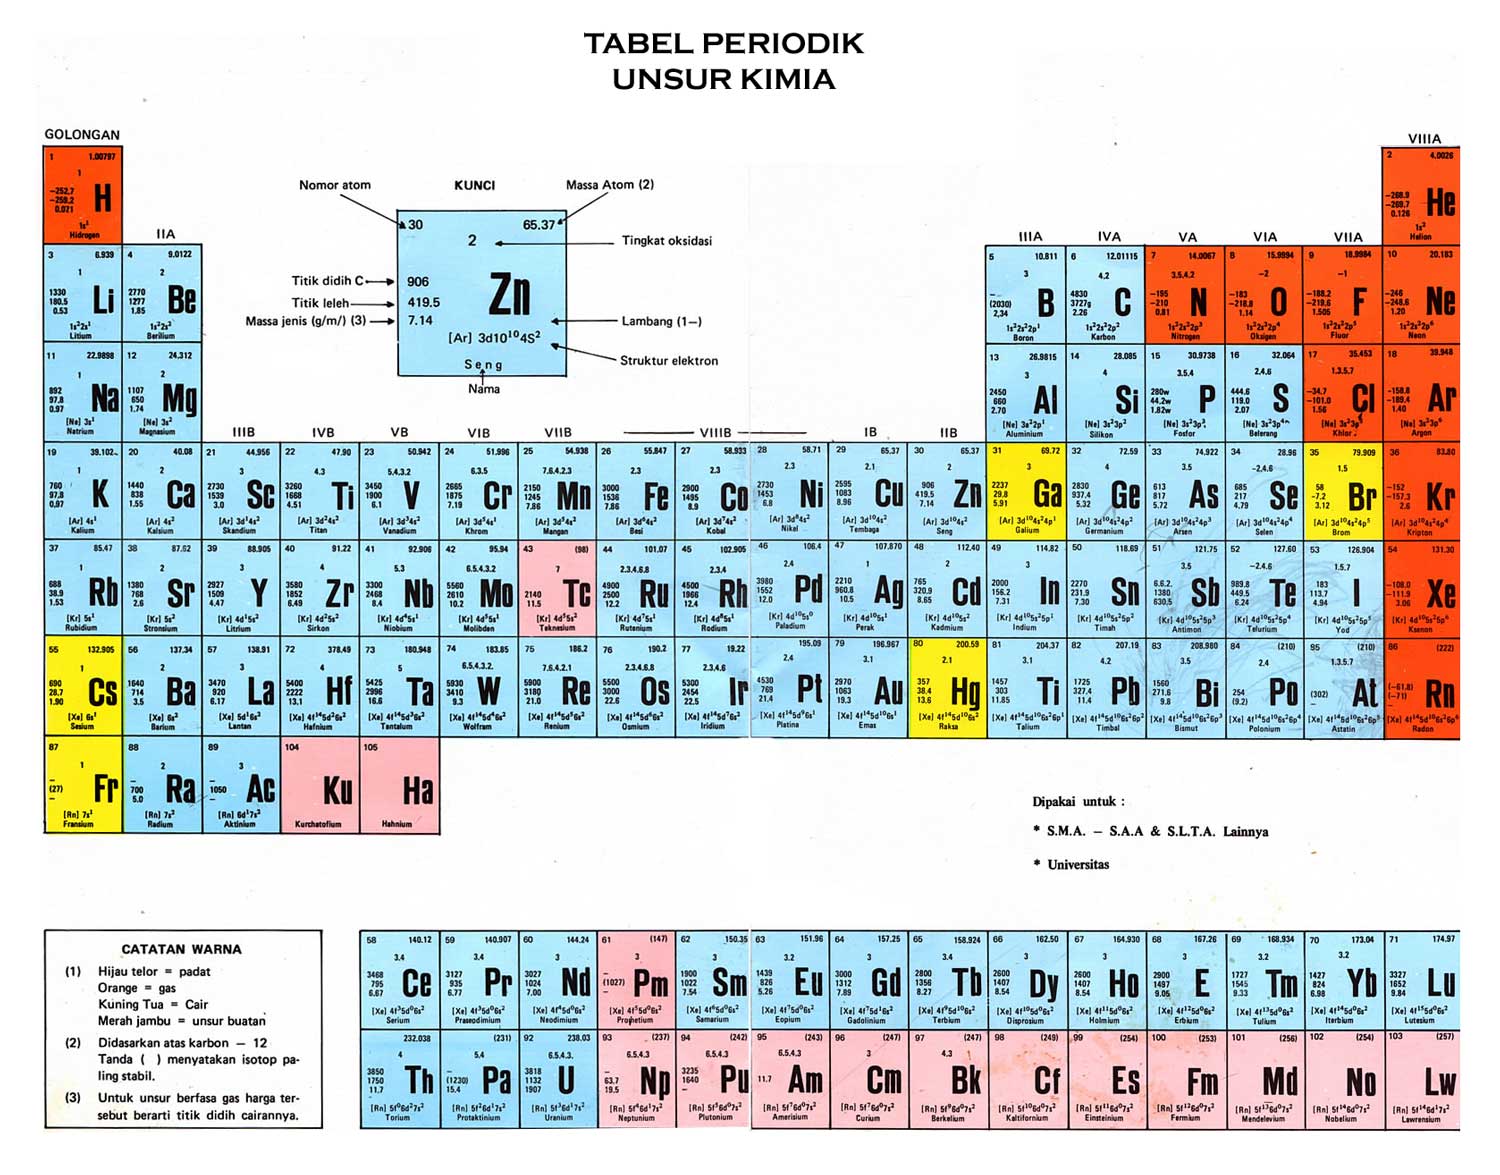 Tabel periodic sistem periodic unsur